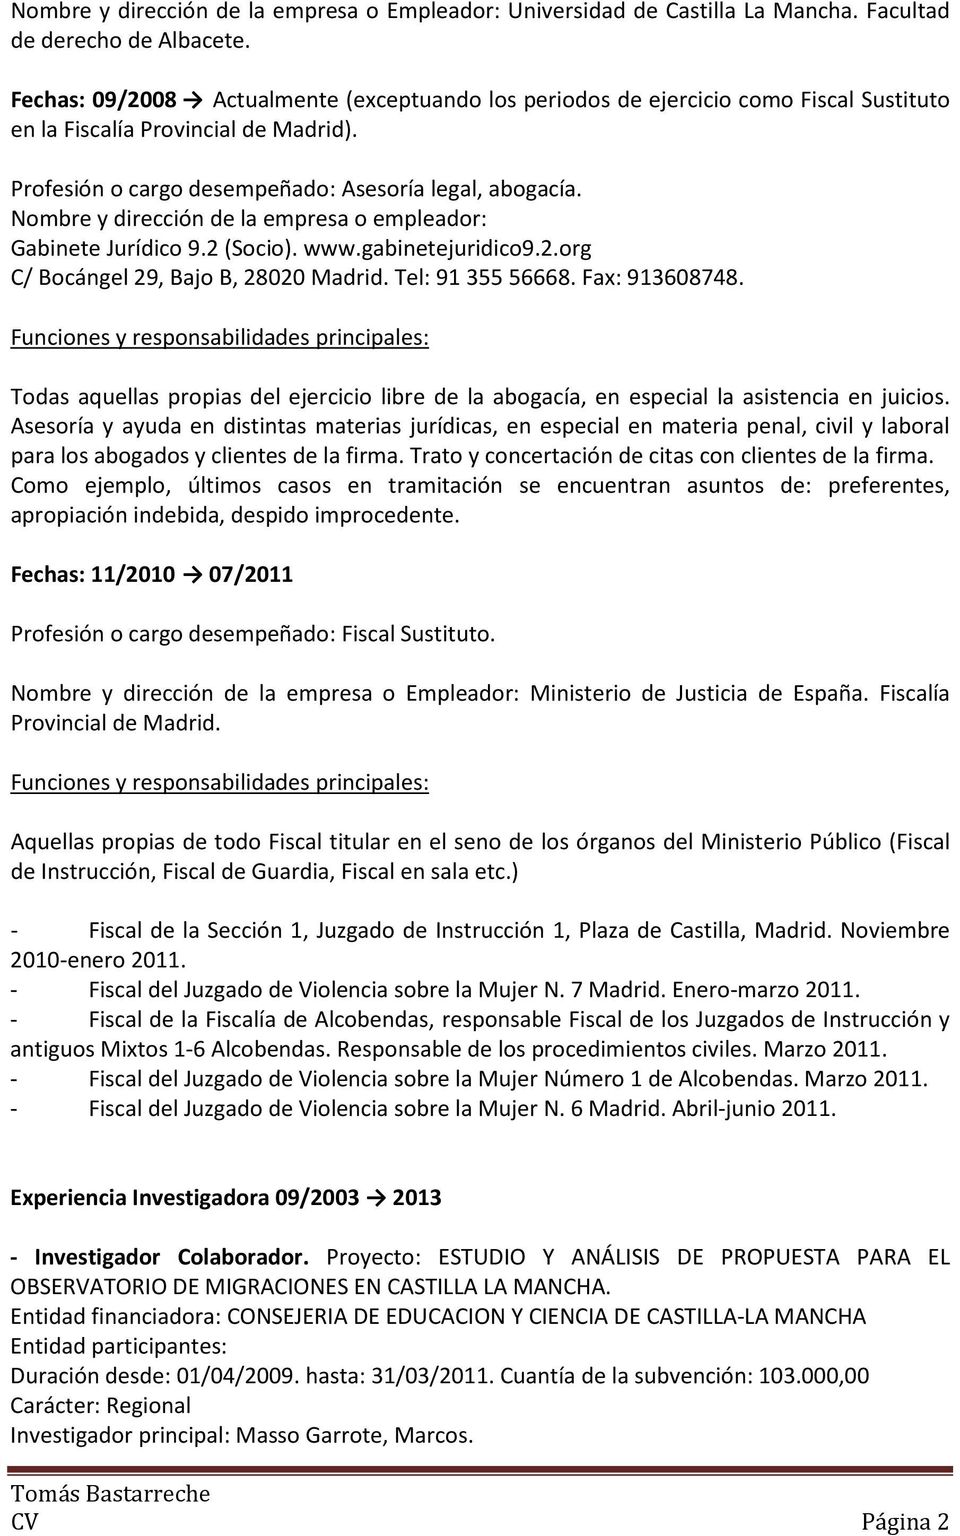 Nombre y dirección de la empresa o empleador: Gabinete Jurídico 9.2 (Socio). www.gabinetejuridico9.2.org C/ Bocángel 29, Bajo B, 28020 Madrid. Tel: 91 355 56668. Fax: 913608748.